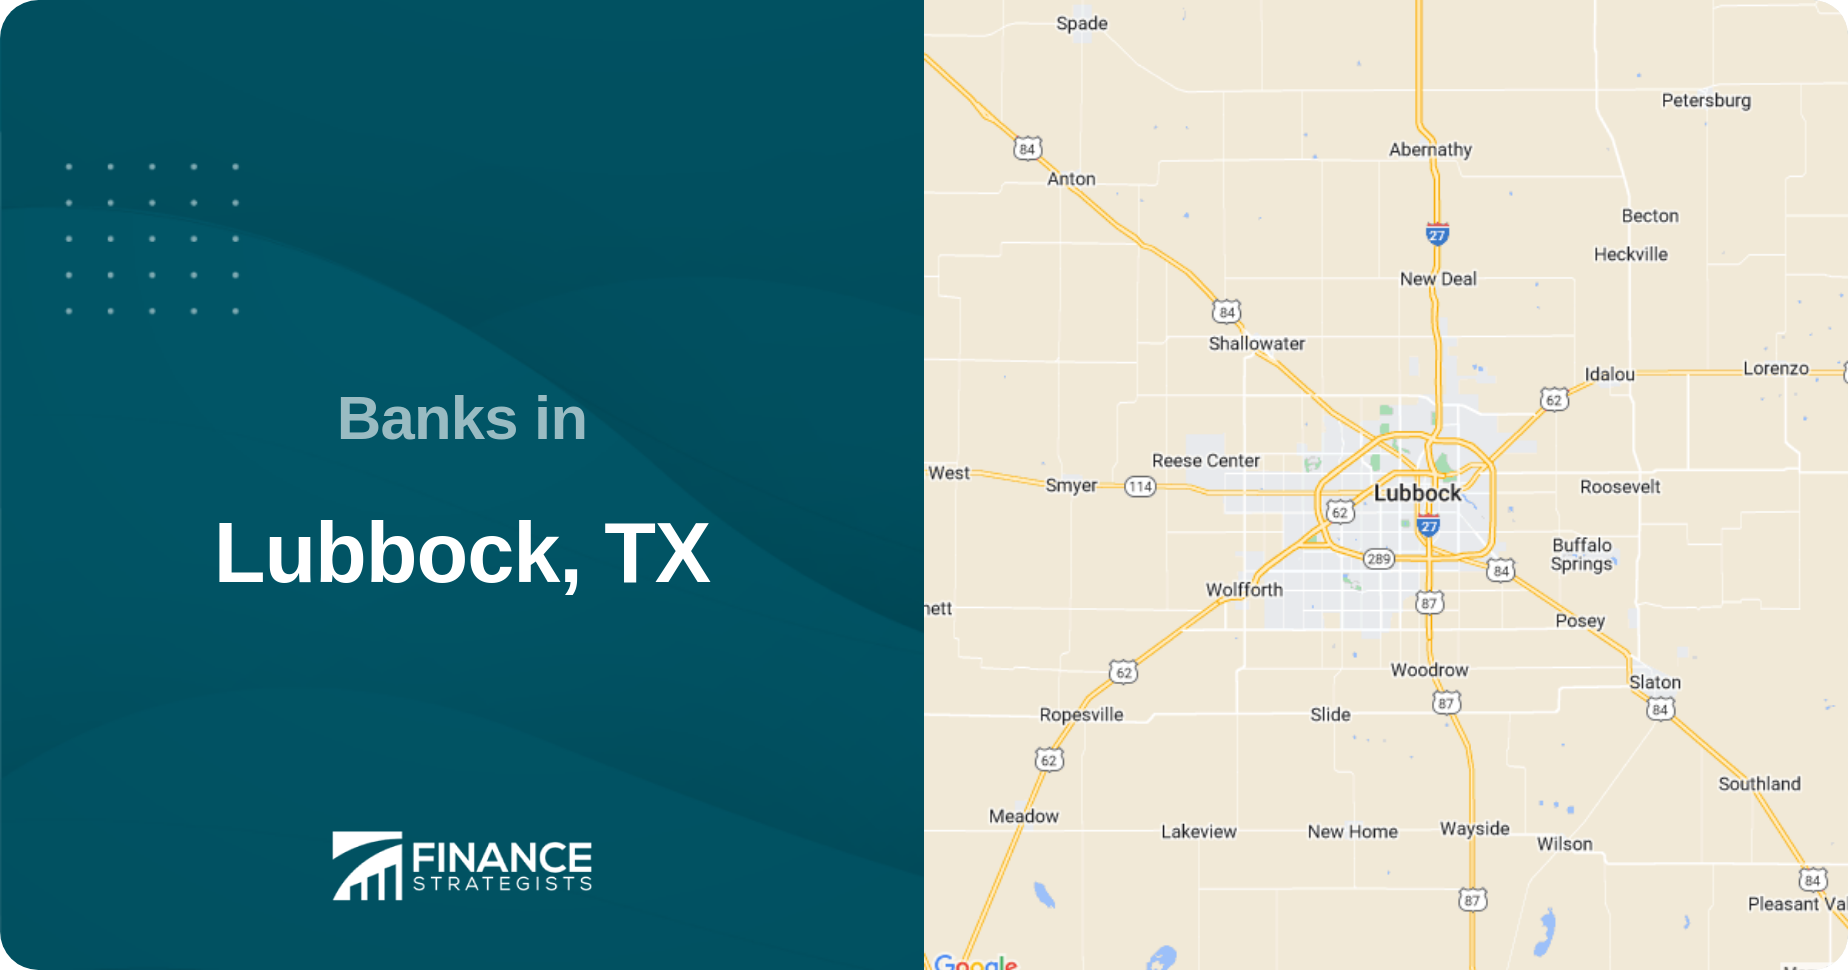 Banks in Lubbock, TX